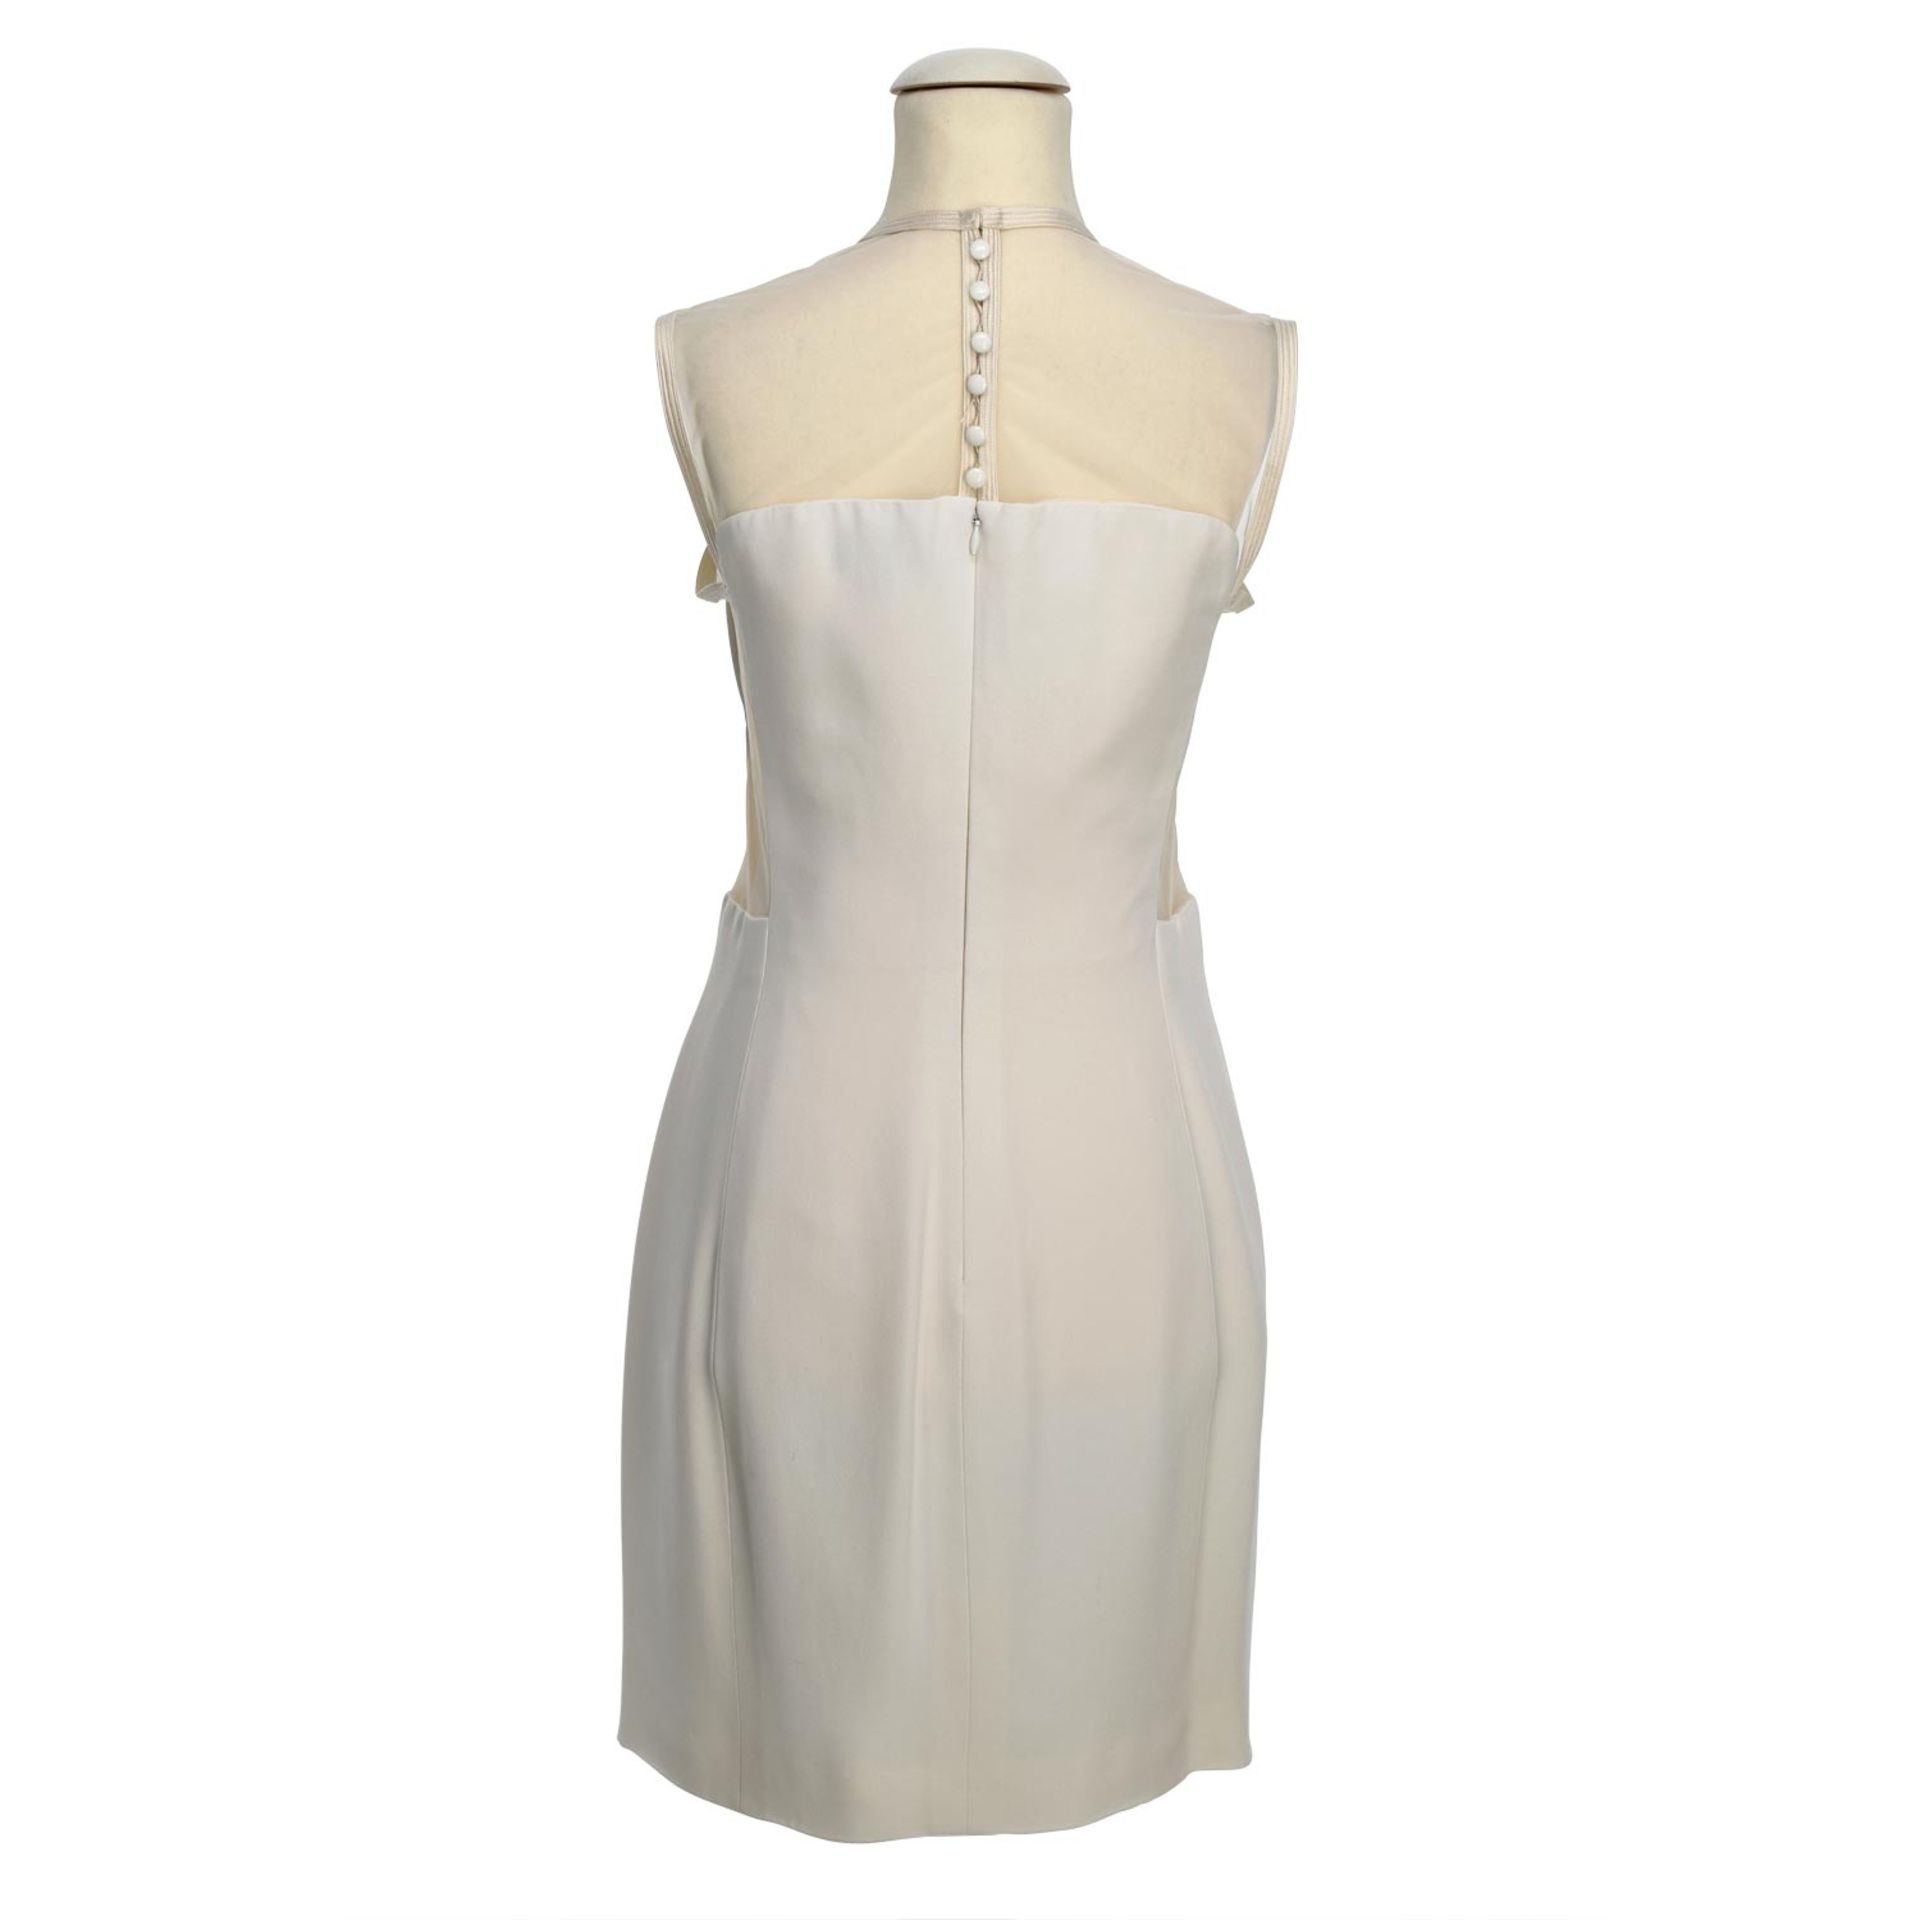 GIANNI VERSACE VINTAGE Kleid, Gr. 36/38.Weißes Etuikleid mit transparetem Mesh-Detail - Bild 4 aus 4